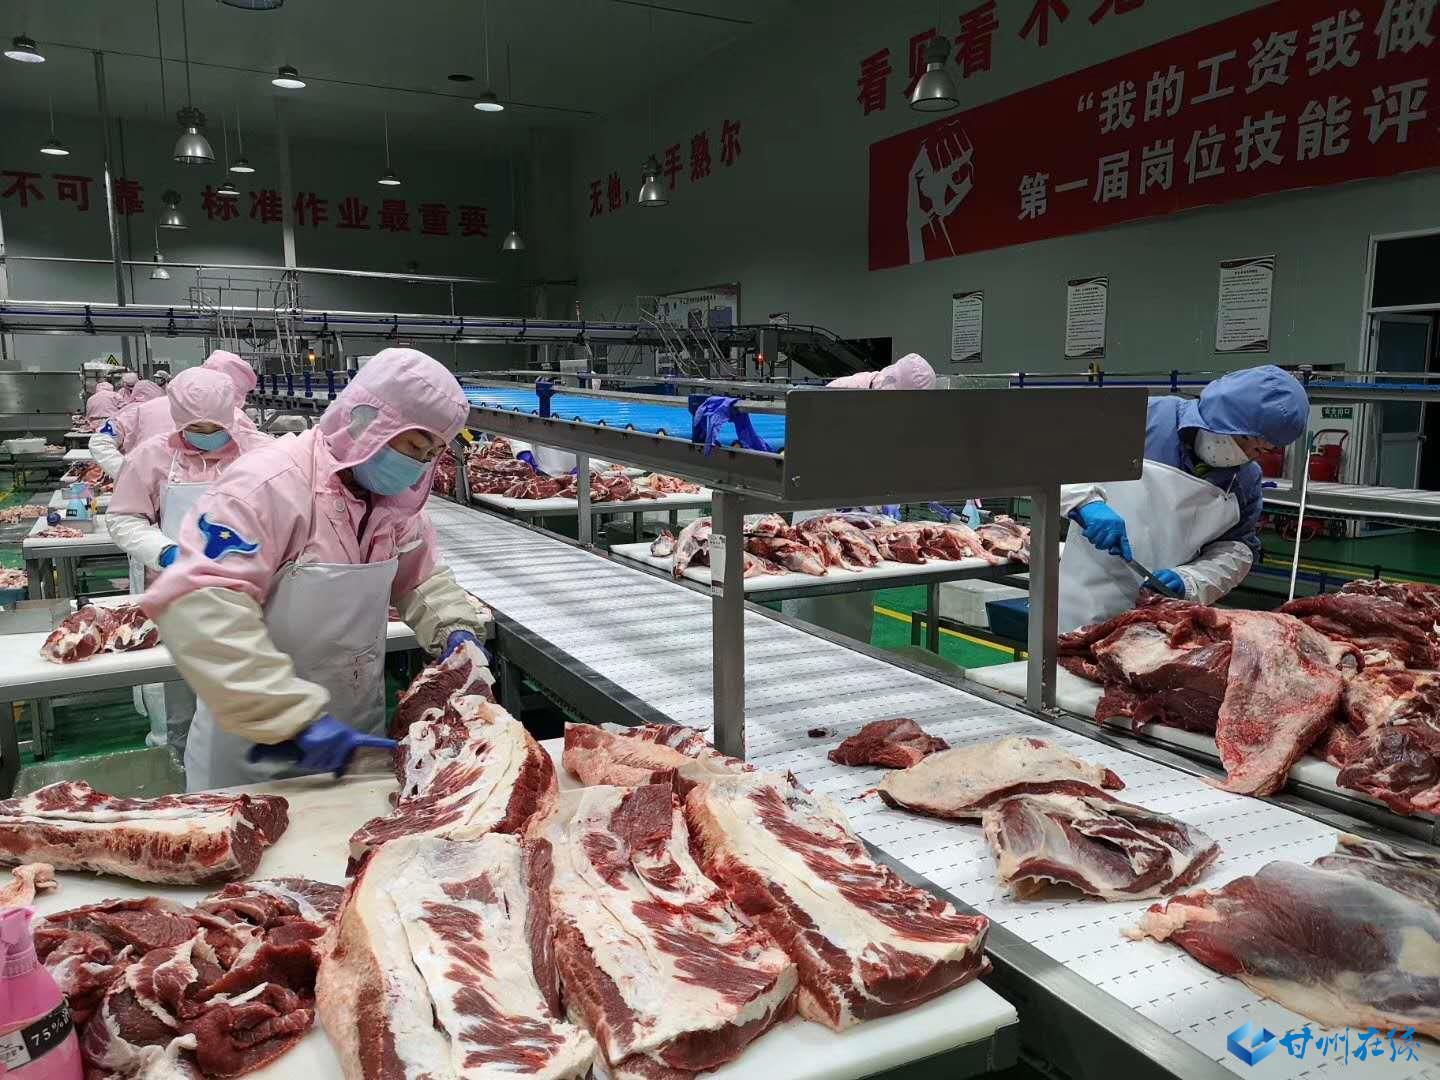 截至2019年底,甘州区肉牛饲养量达到36万头,建成规模养殖场120个,屠宰